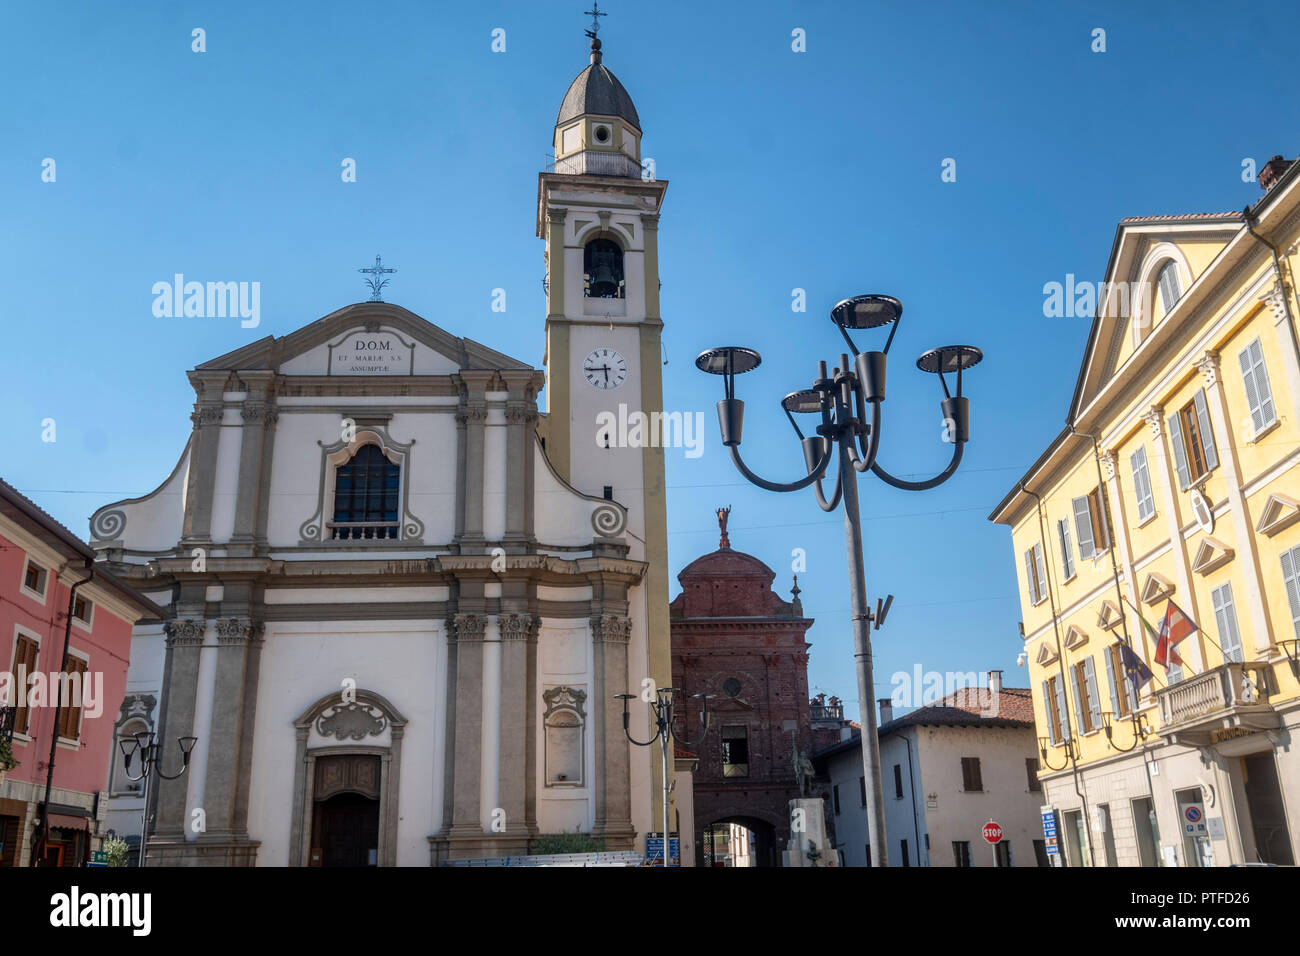 Carpignano Sesia, Novara, Piedmont, Italy: Santa Maria church and other historic buildings Stock Photo